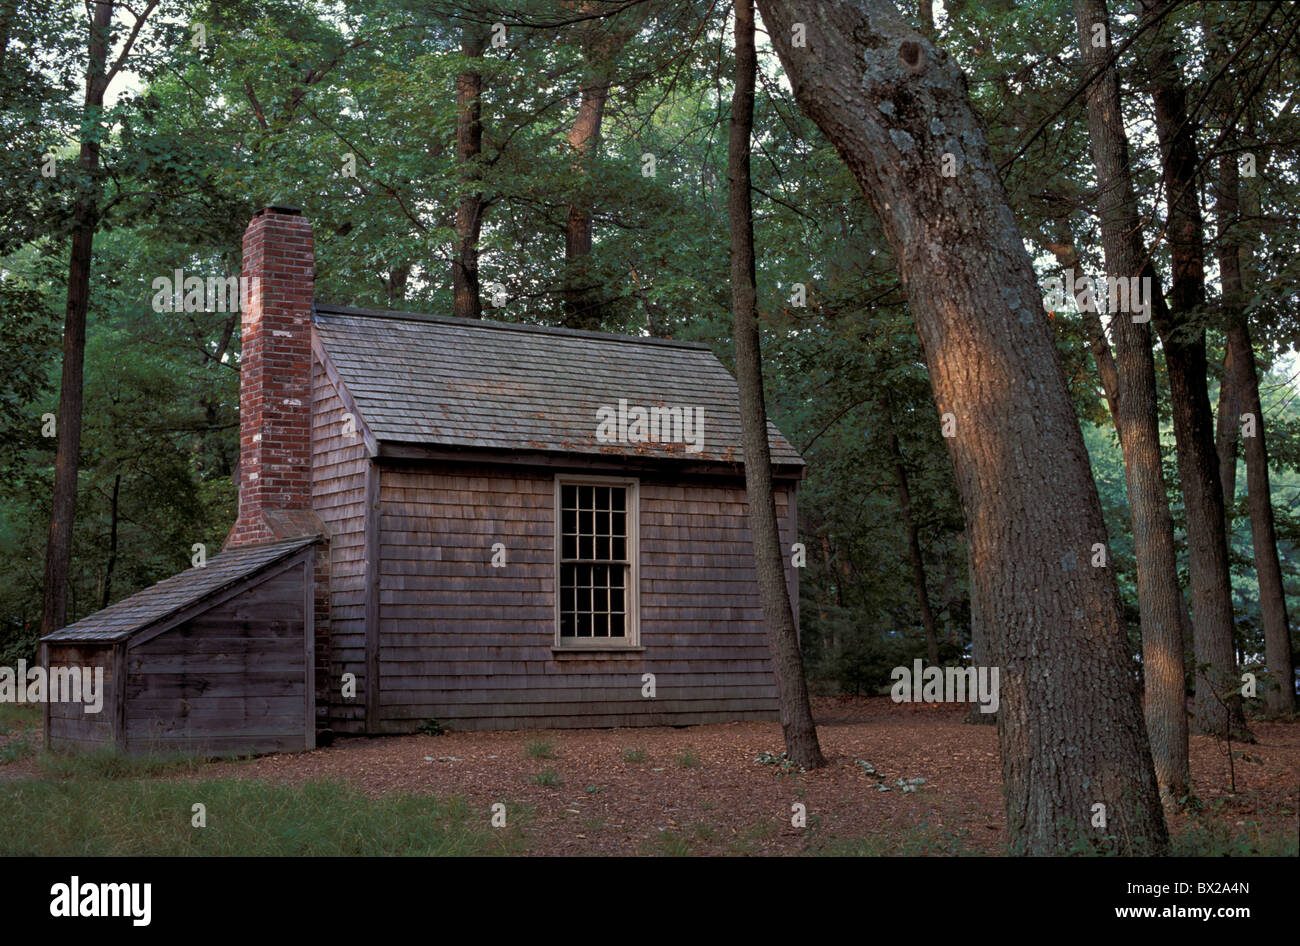 Nord à proximité de Concord Massachusetts cabine Thoreau Henry David Thoreau Walden Pond réplique United States Nort Banque D'Images